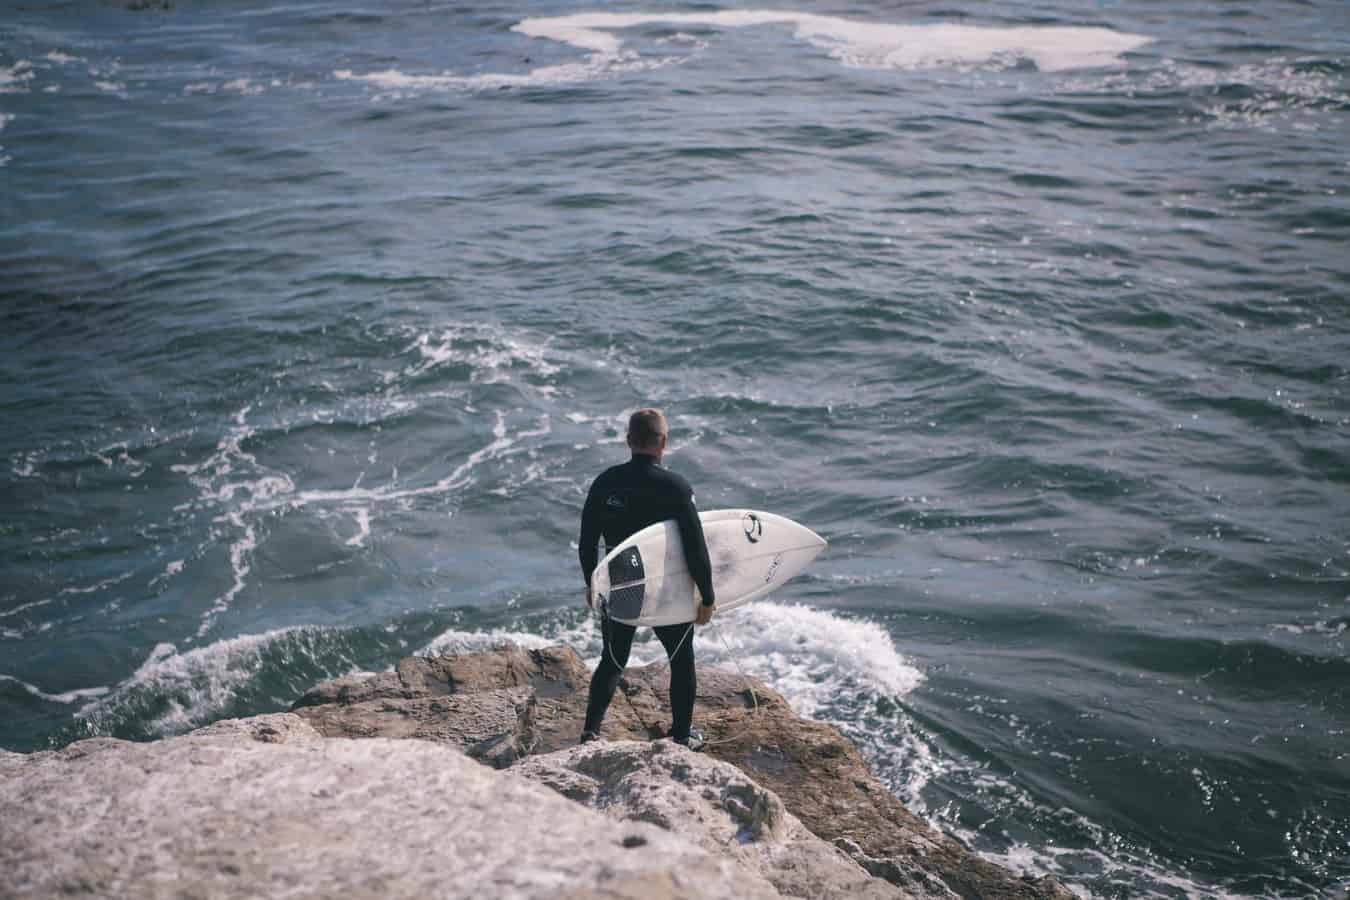 beginner tips for surfers